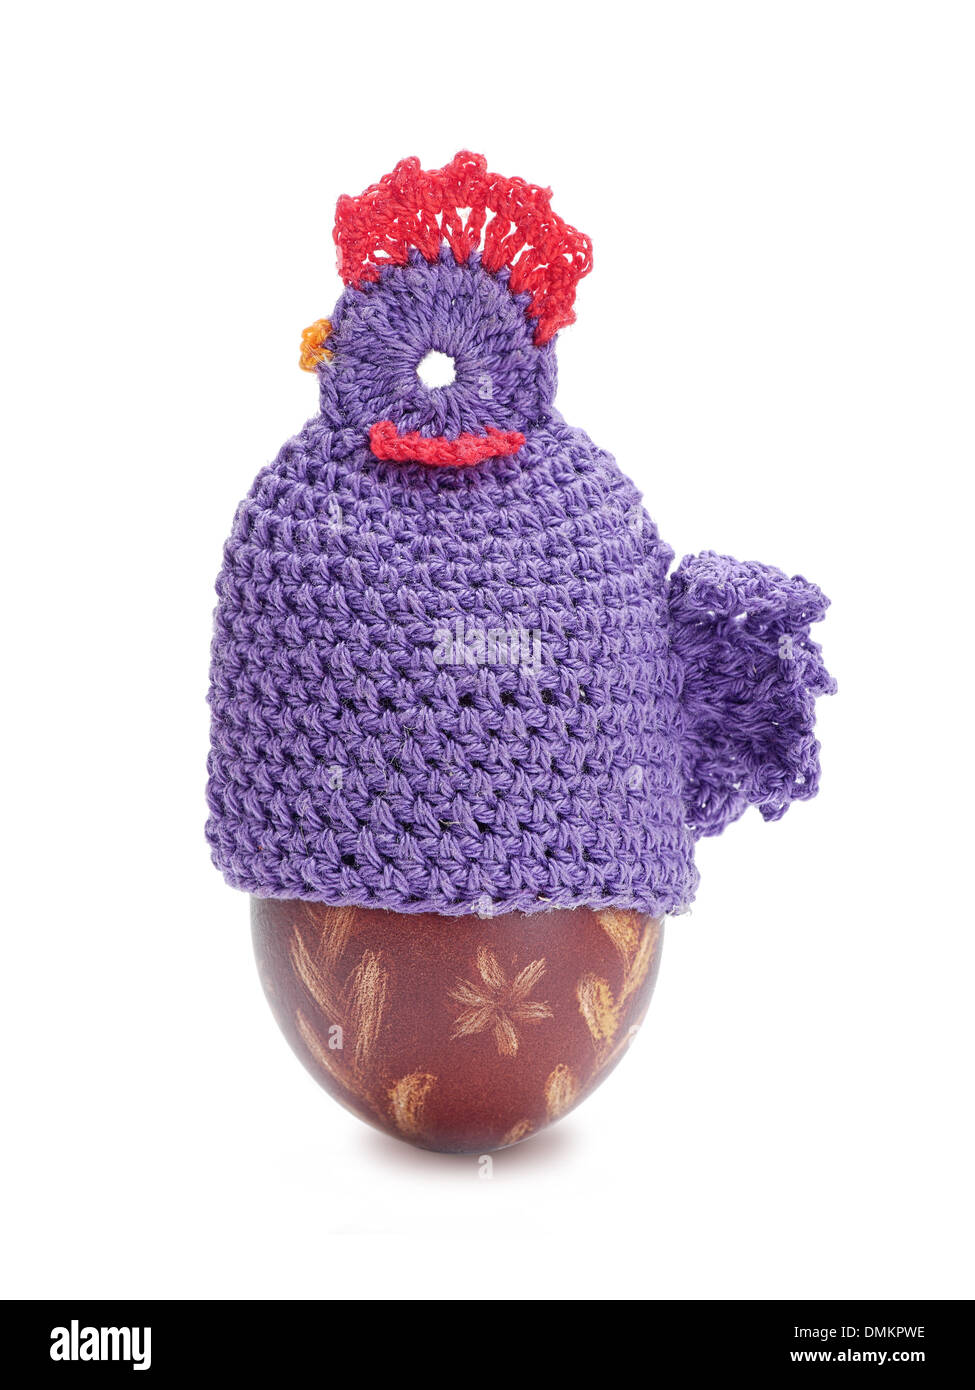 Crochet sitter made from knitting wool sitting on easter egg shot on white Stock Photo